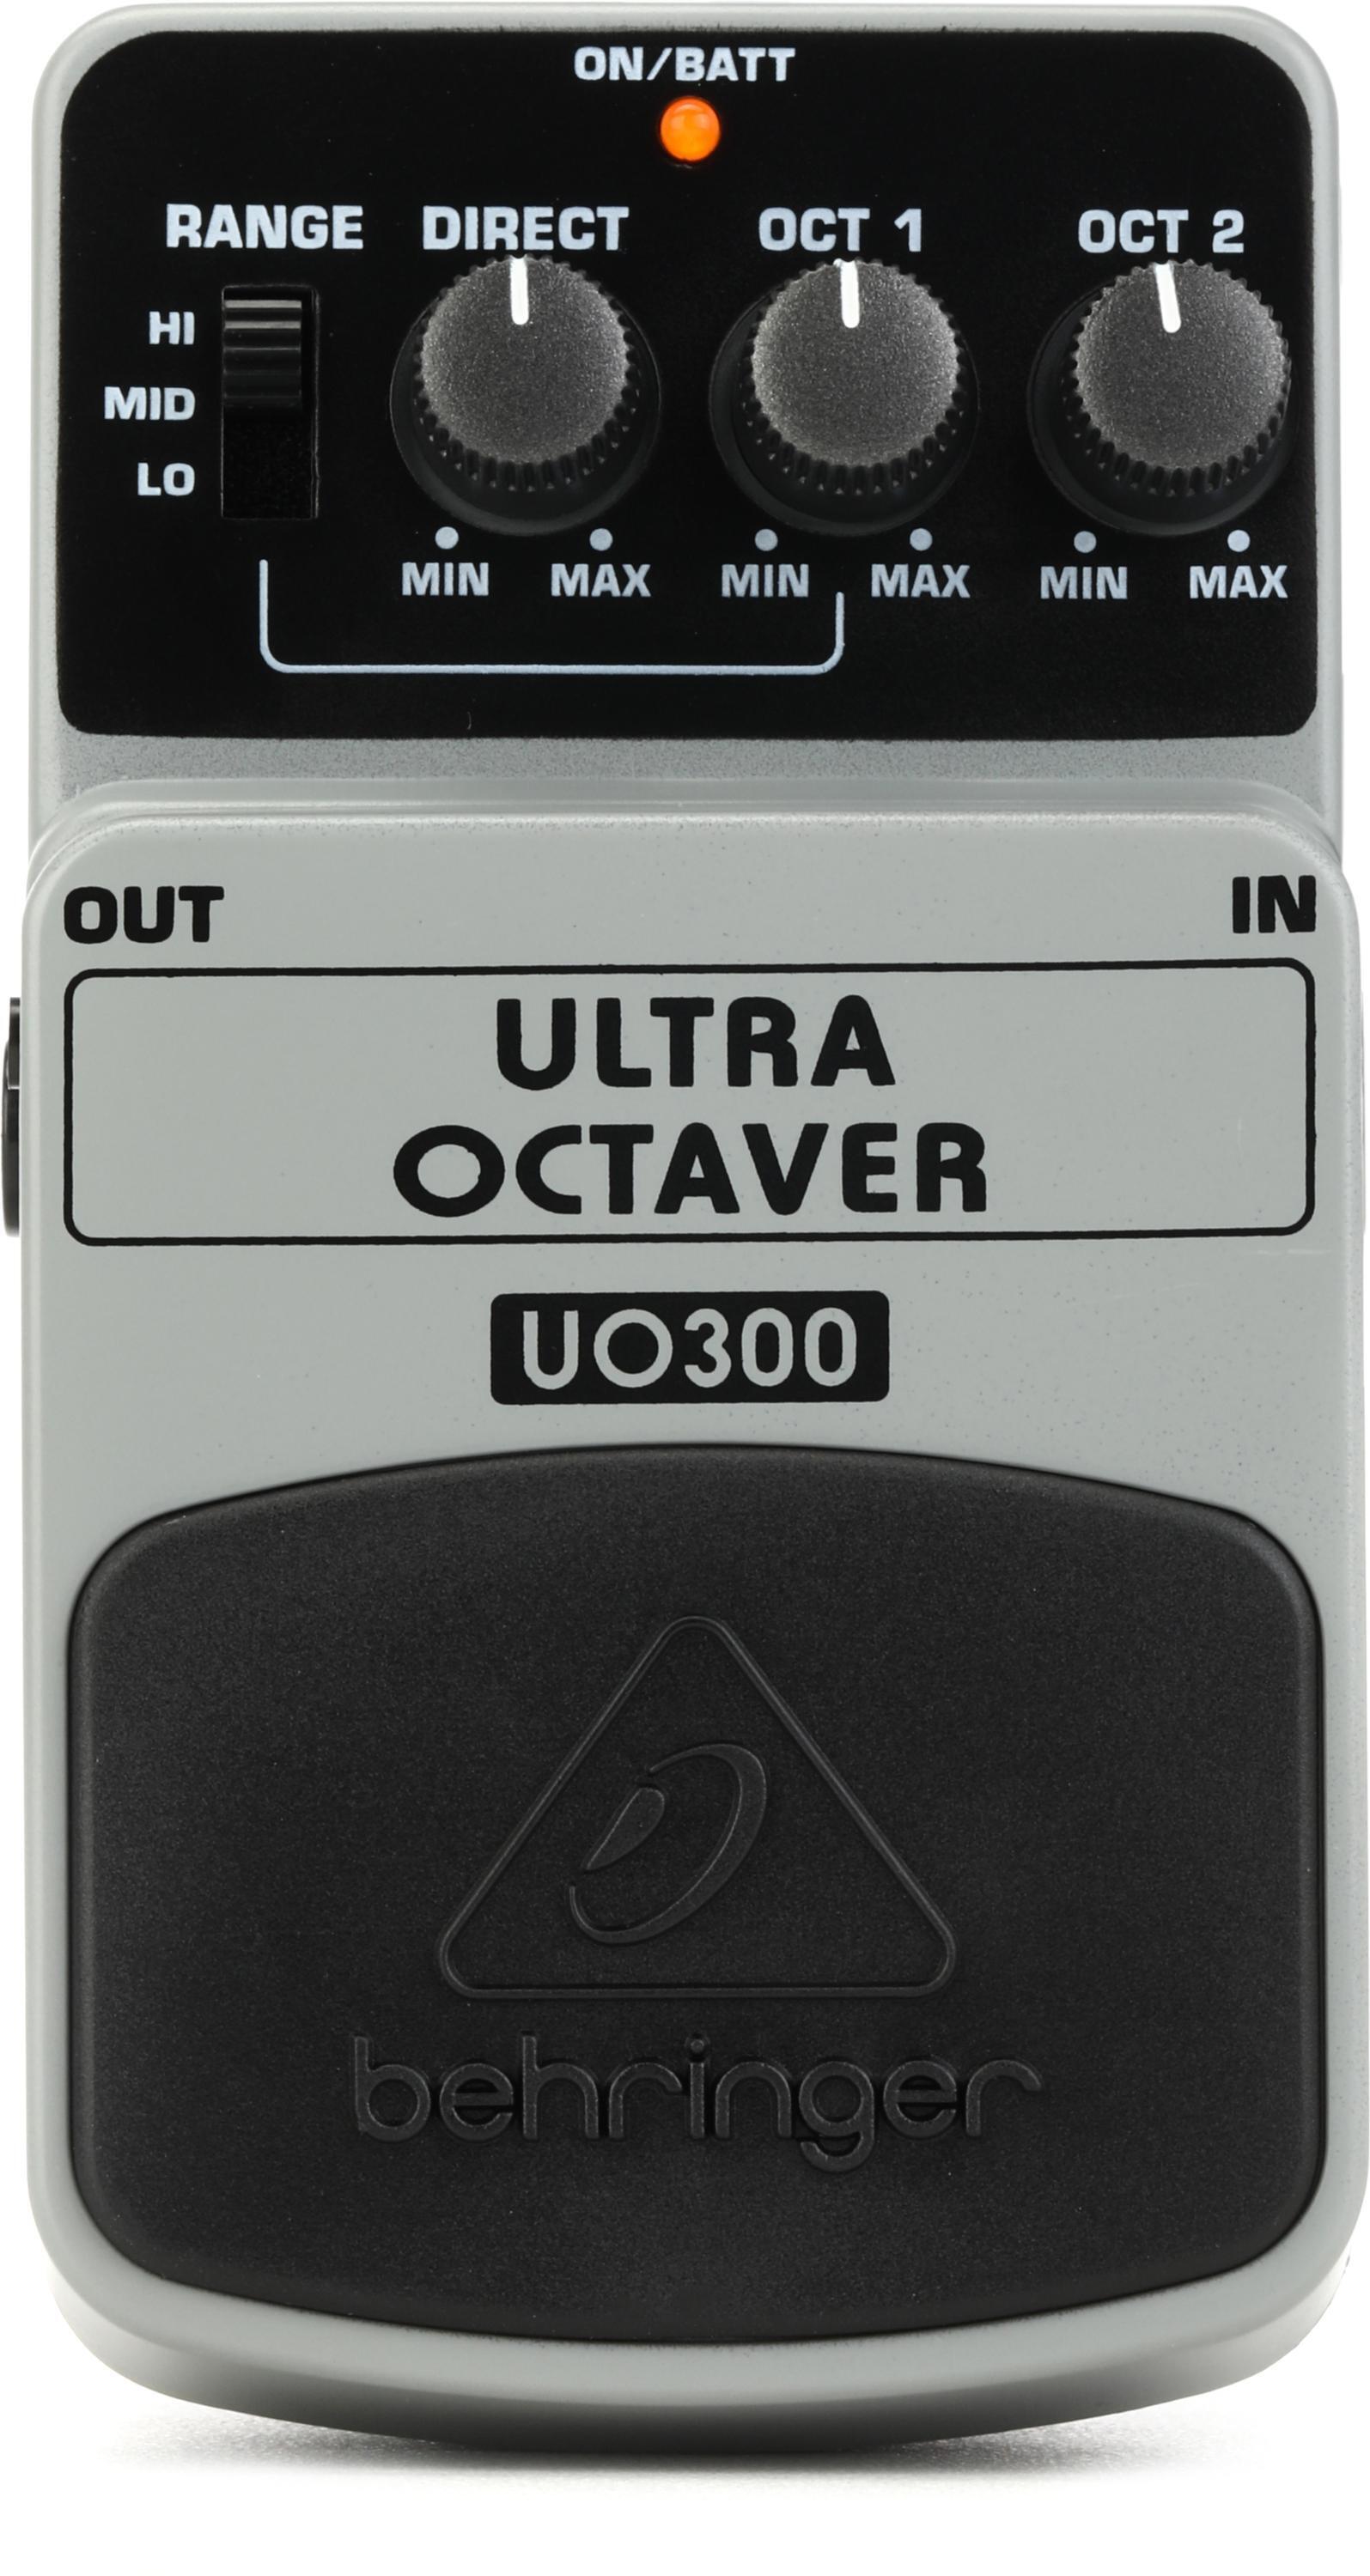 Bundled Item: Behringer UO300 Ultra Octaver Pedal